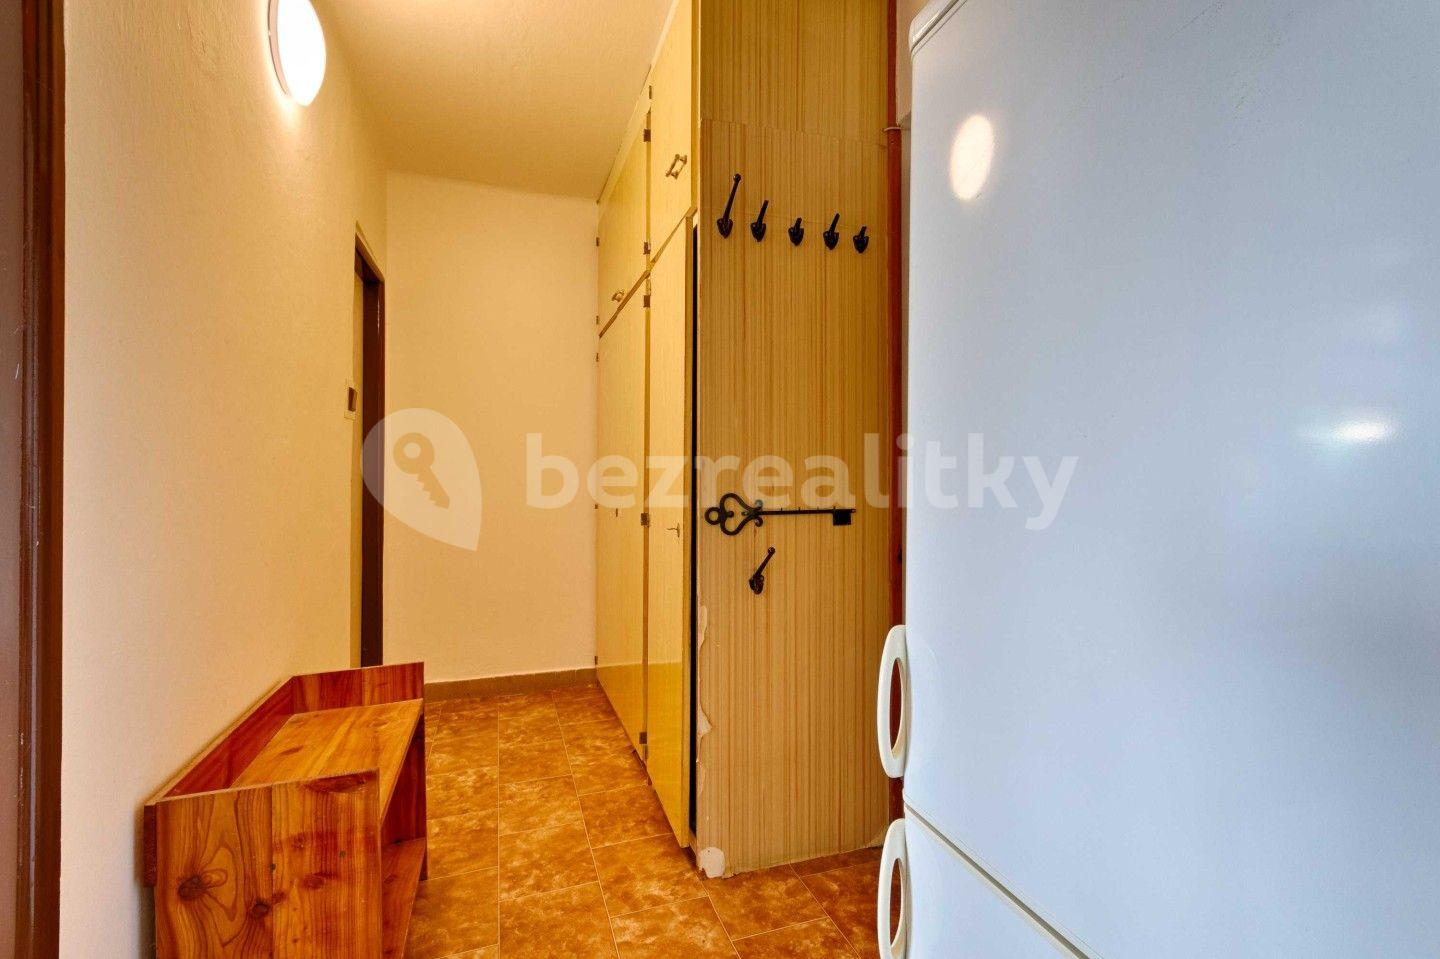 2 bedroom flat for sale, 45 m², Družstevní, Kamenice nad Lipou, Vysočina Region